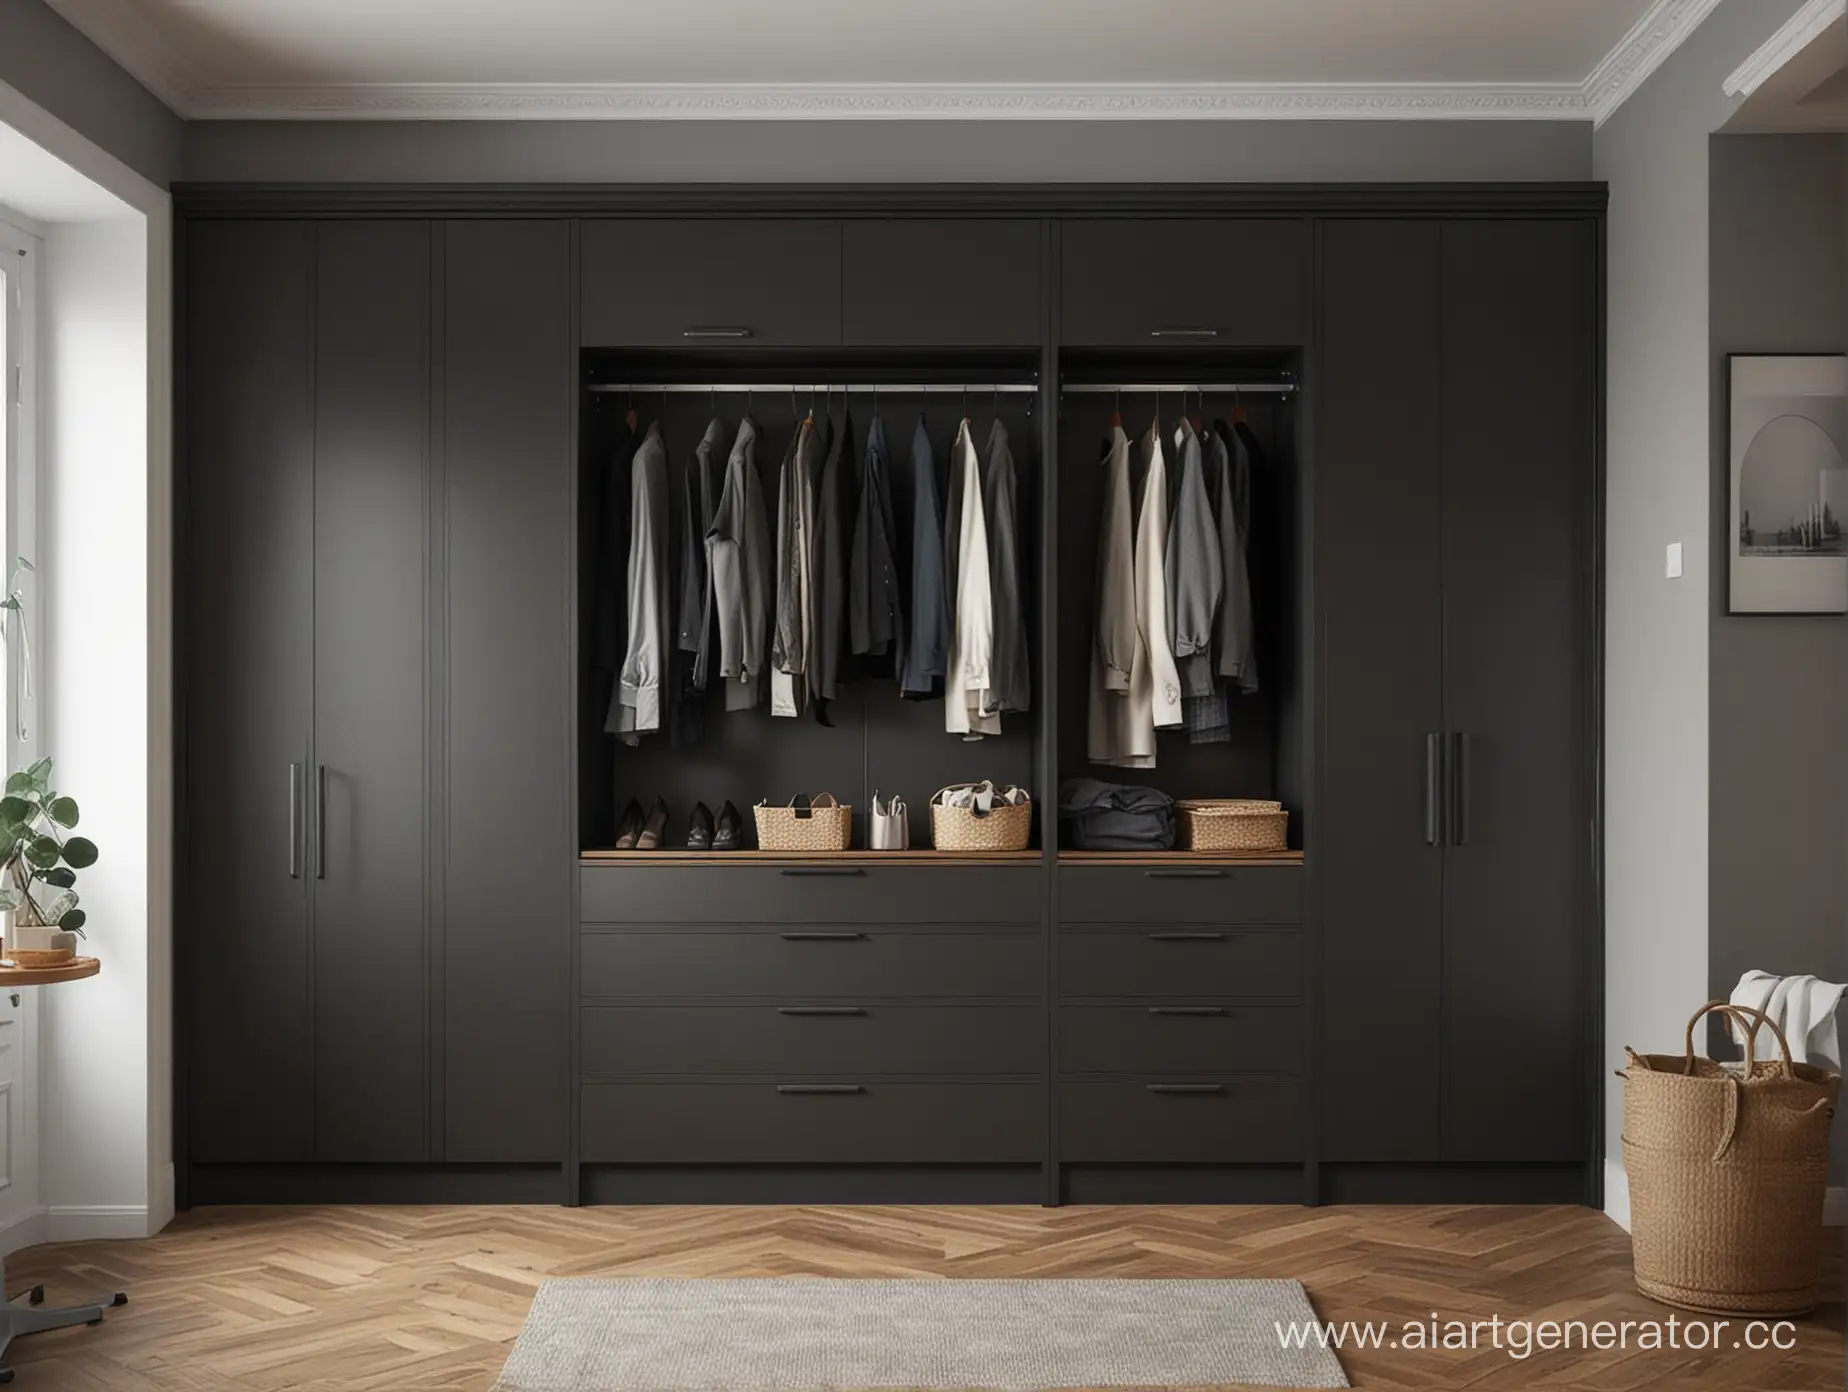 Modern-Dark-Wardrobe-Design-for-Hallway-Interior